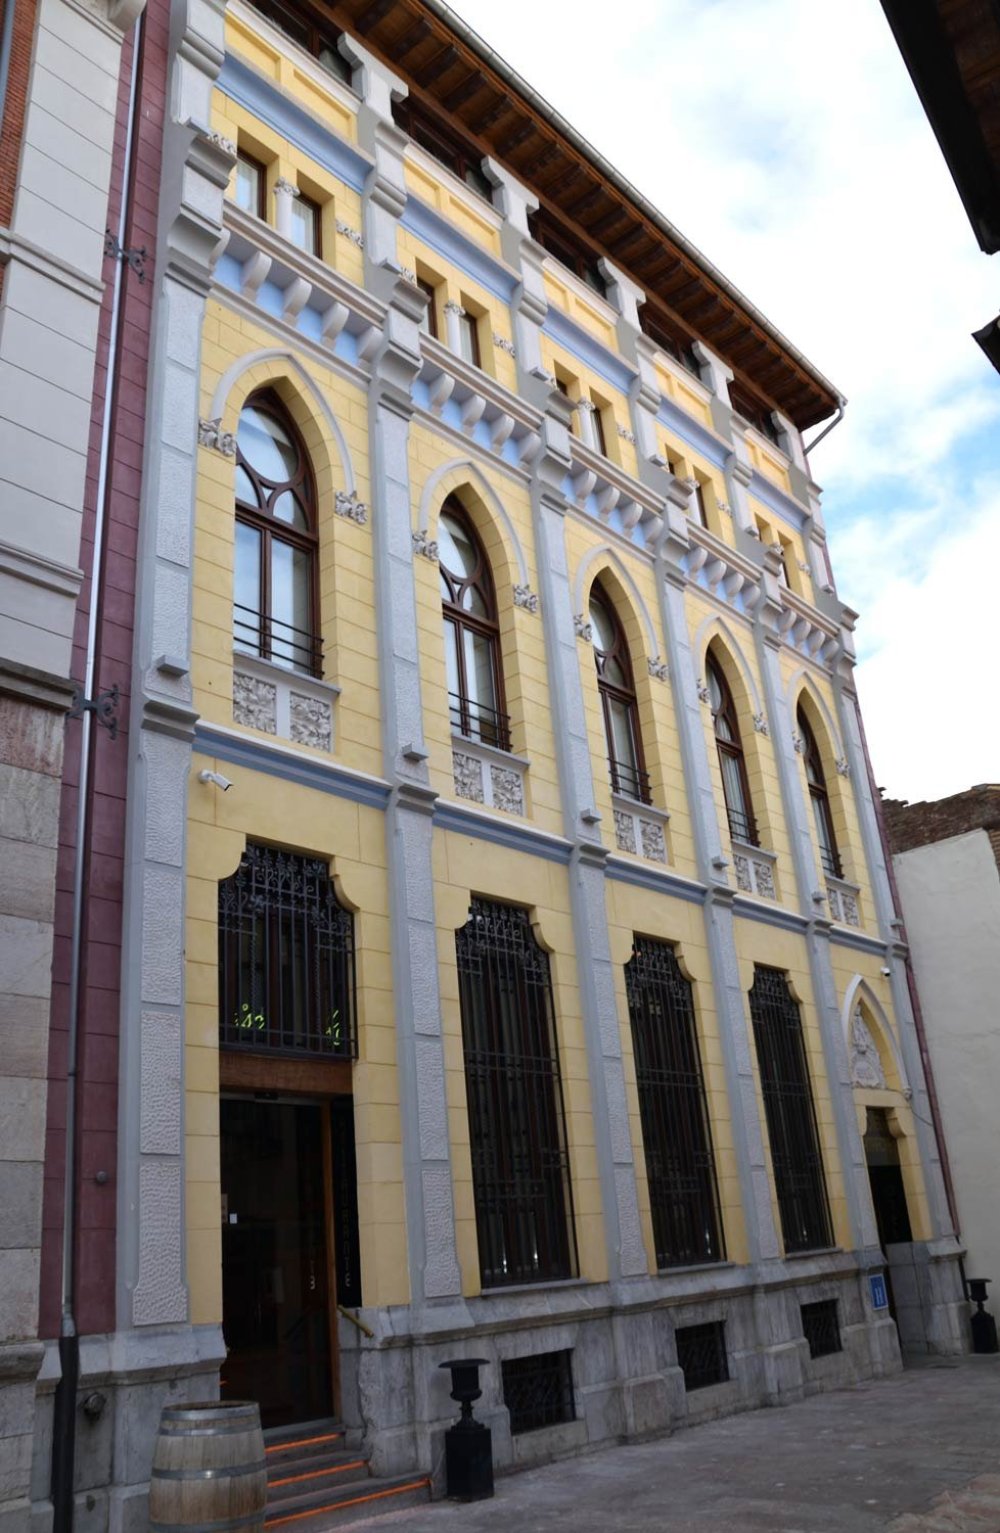 Rehabilitación edificio singular Hotel Camarote en León